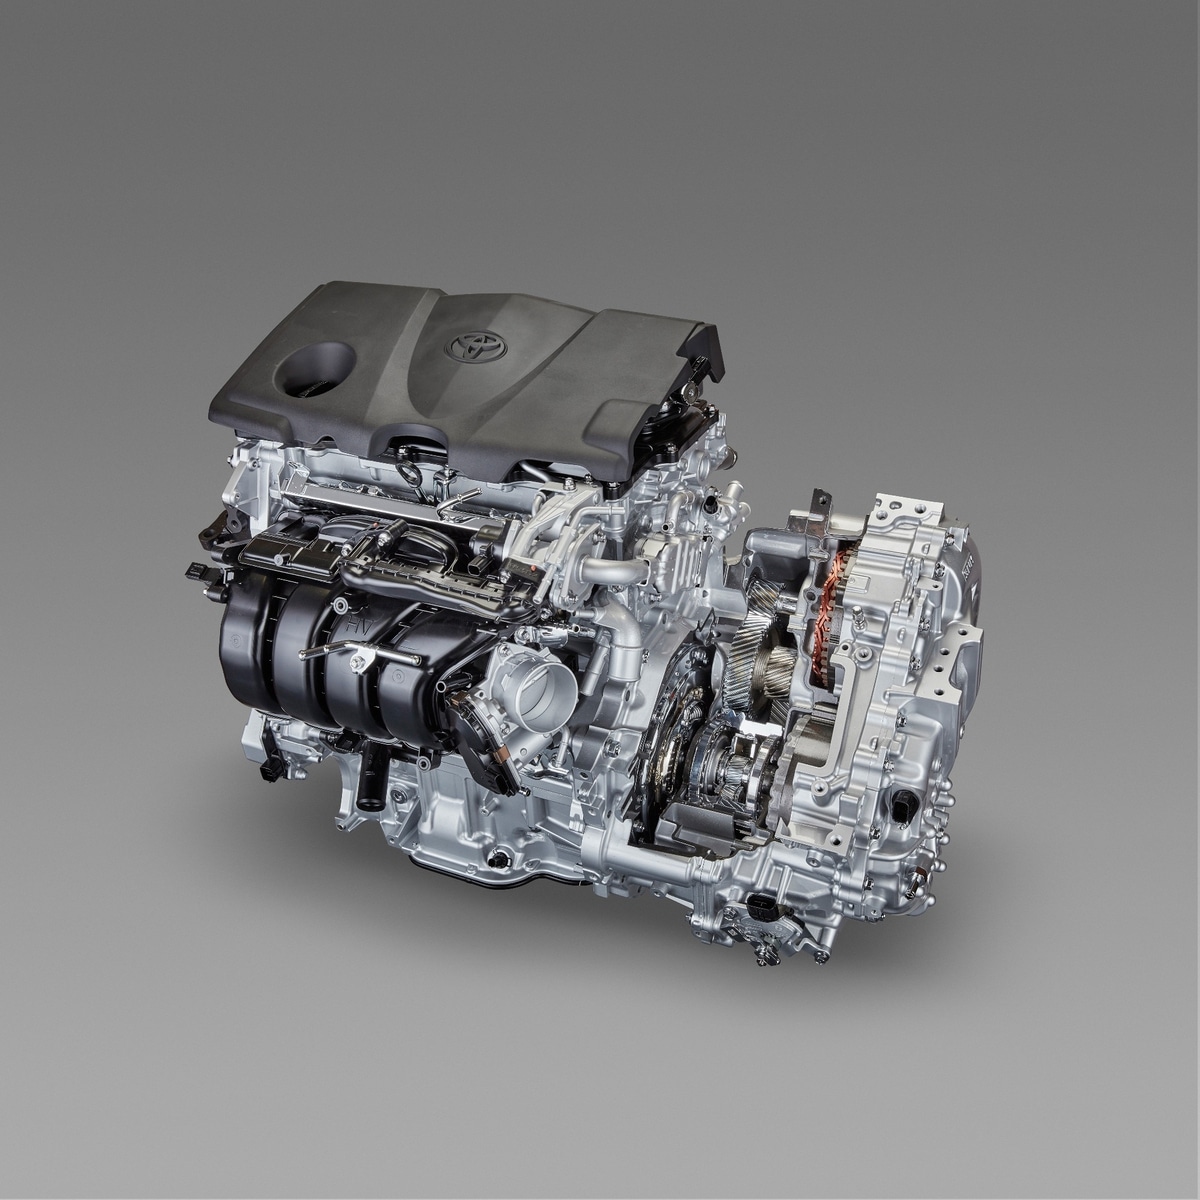 Toyota TNGA engine